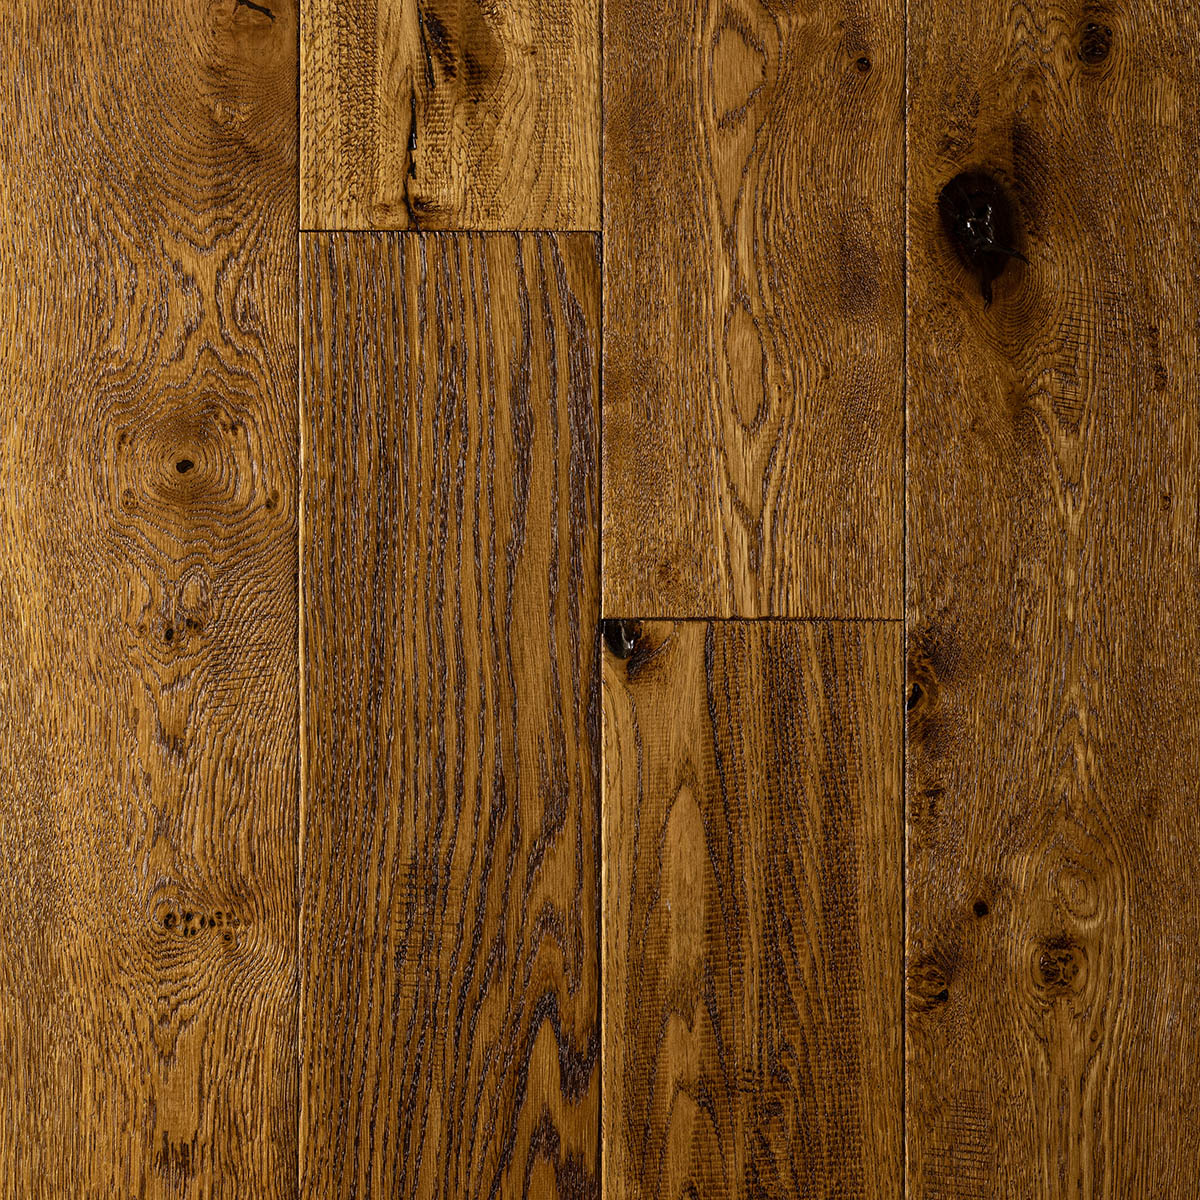 Crowden - Hand Worked Distressed Engineered Oak Floor